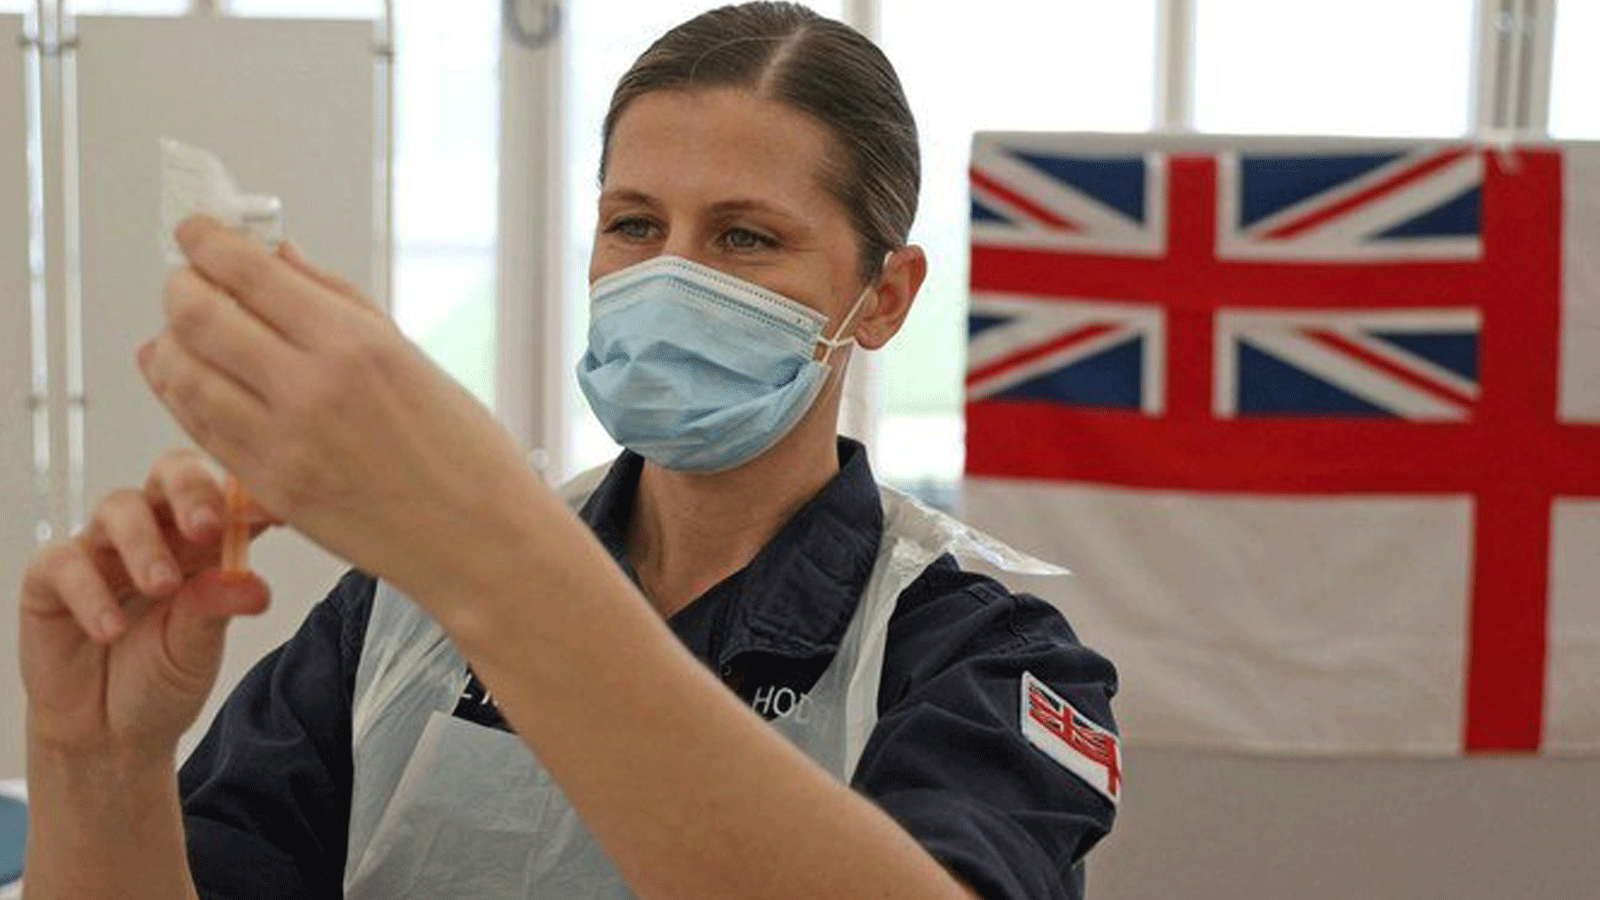 طبيبة في البحرية الملكية تُعد حقن لقاح أكسفورد / أسترازينيكا Covid-19 في باث، جنوب غرب إنجلترا.